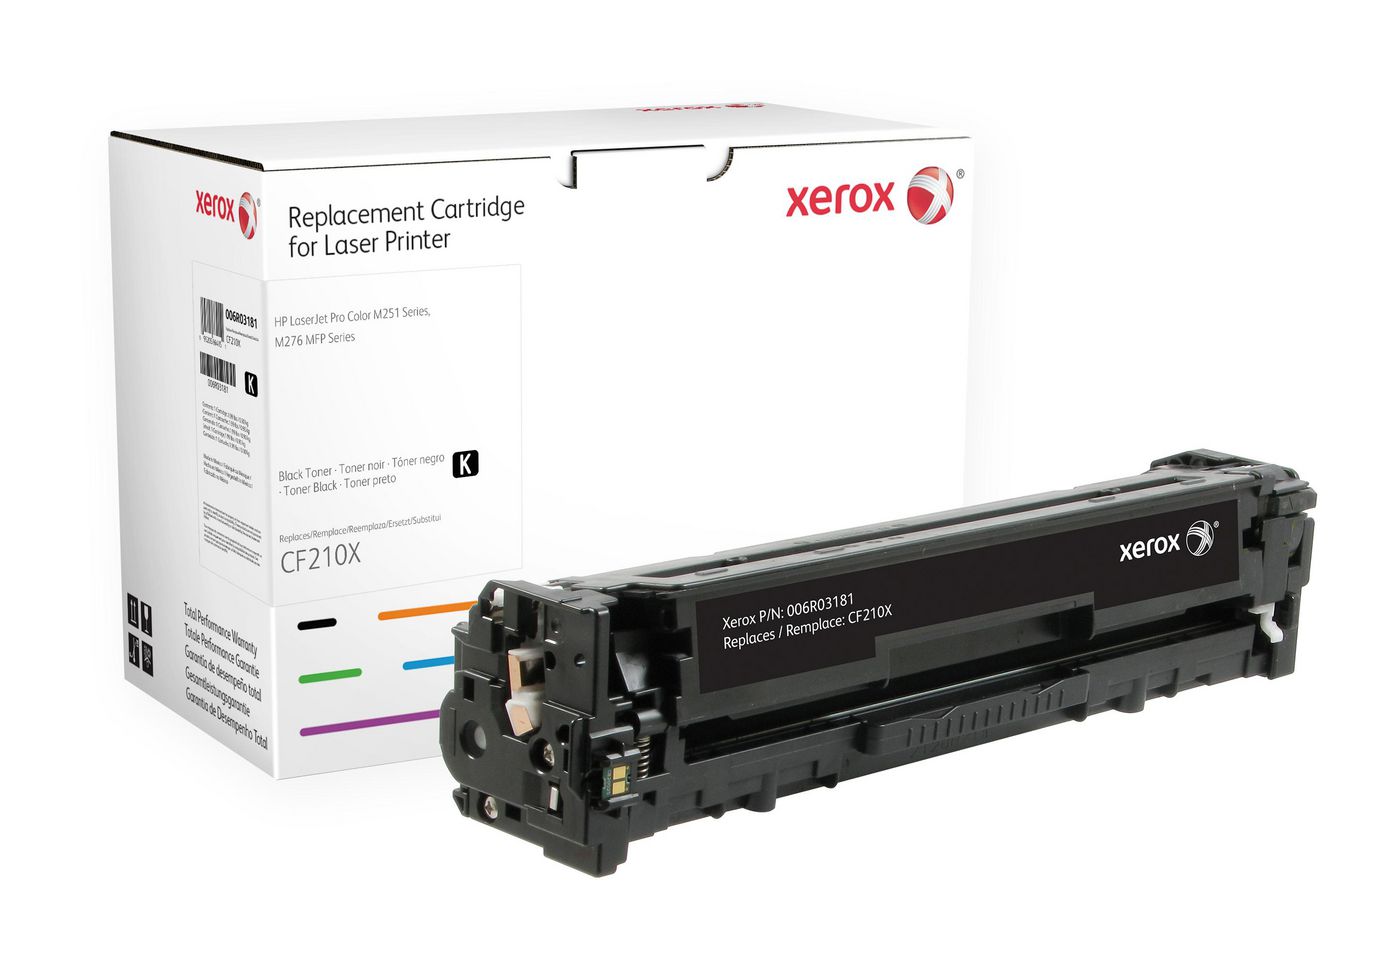 XEROX HP LaserJet Pro 200 M251 Schwarz Tonerpatrone